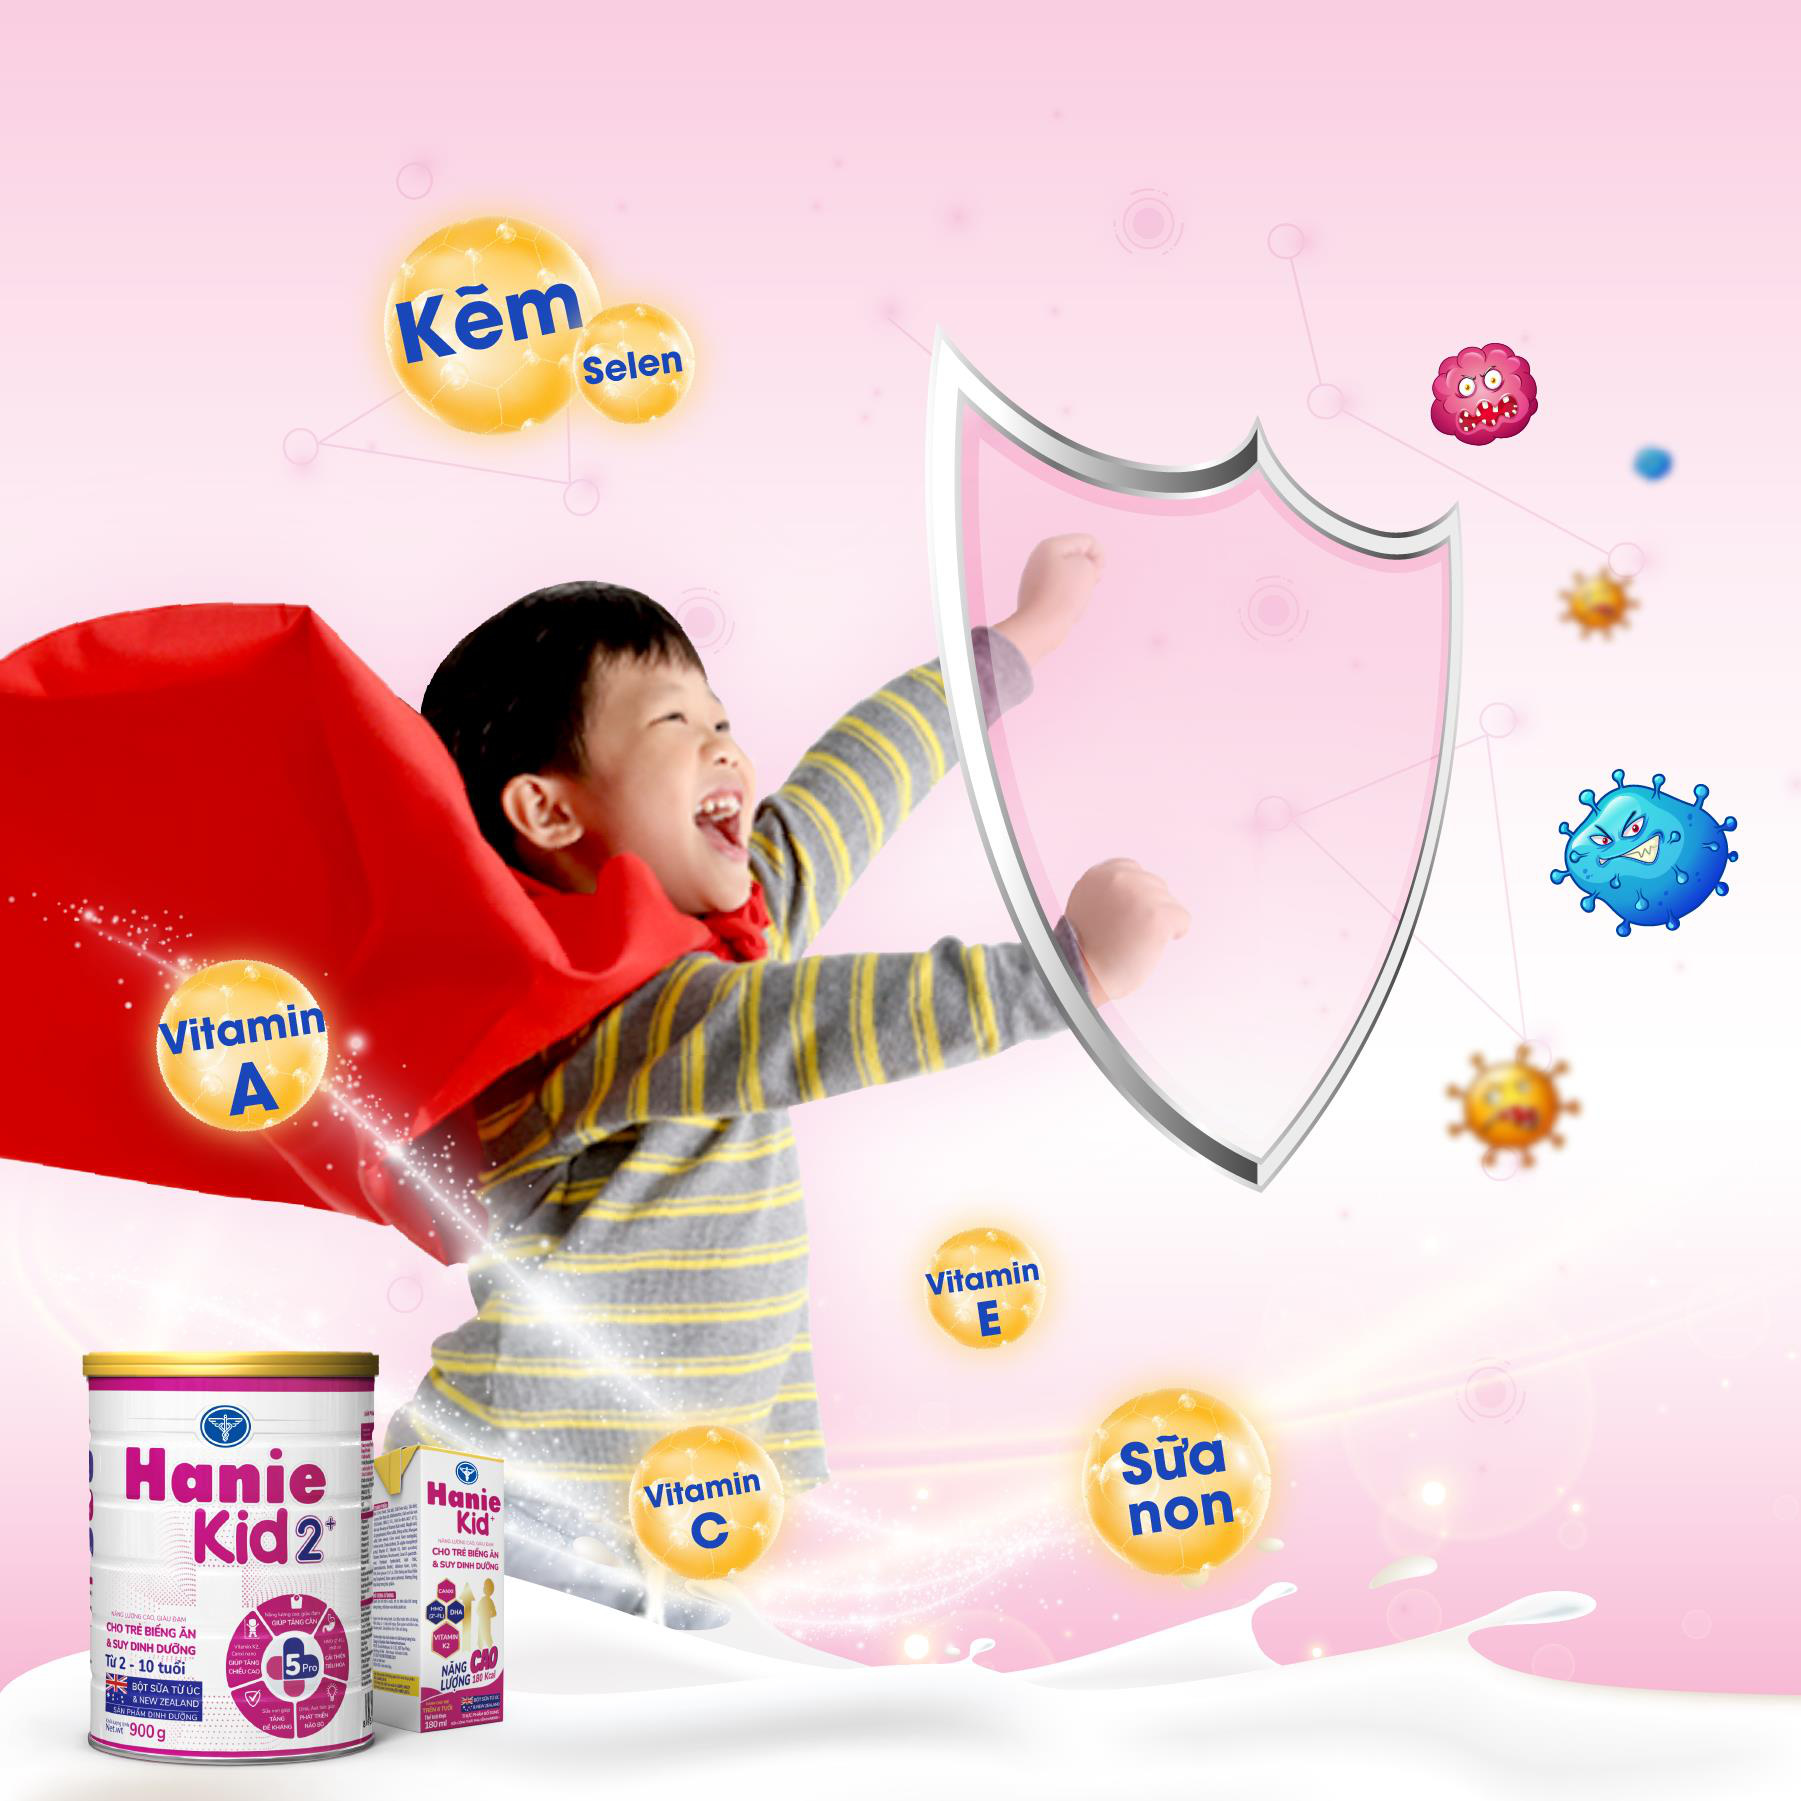 Sữa Hanie Kid 2+: Hệ dưỡng chất 5Pro giúp bé tăng cân và tăng chiều cao - Ảnh 5.